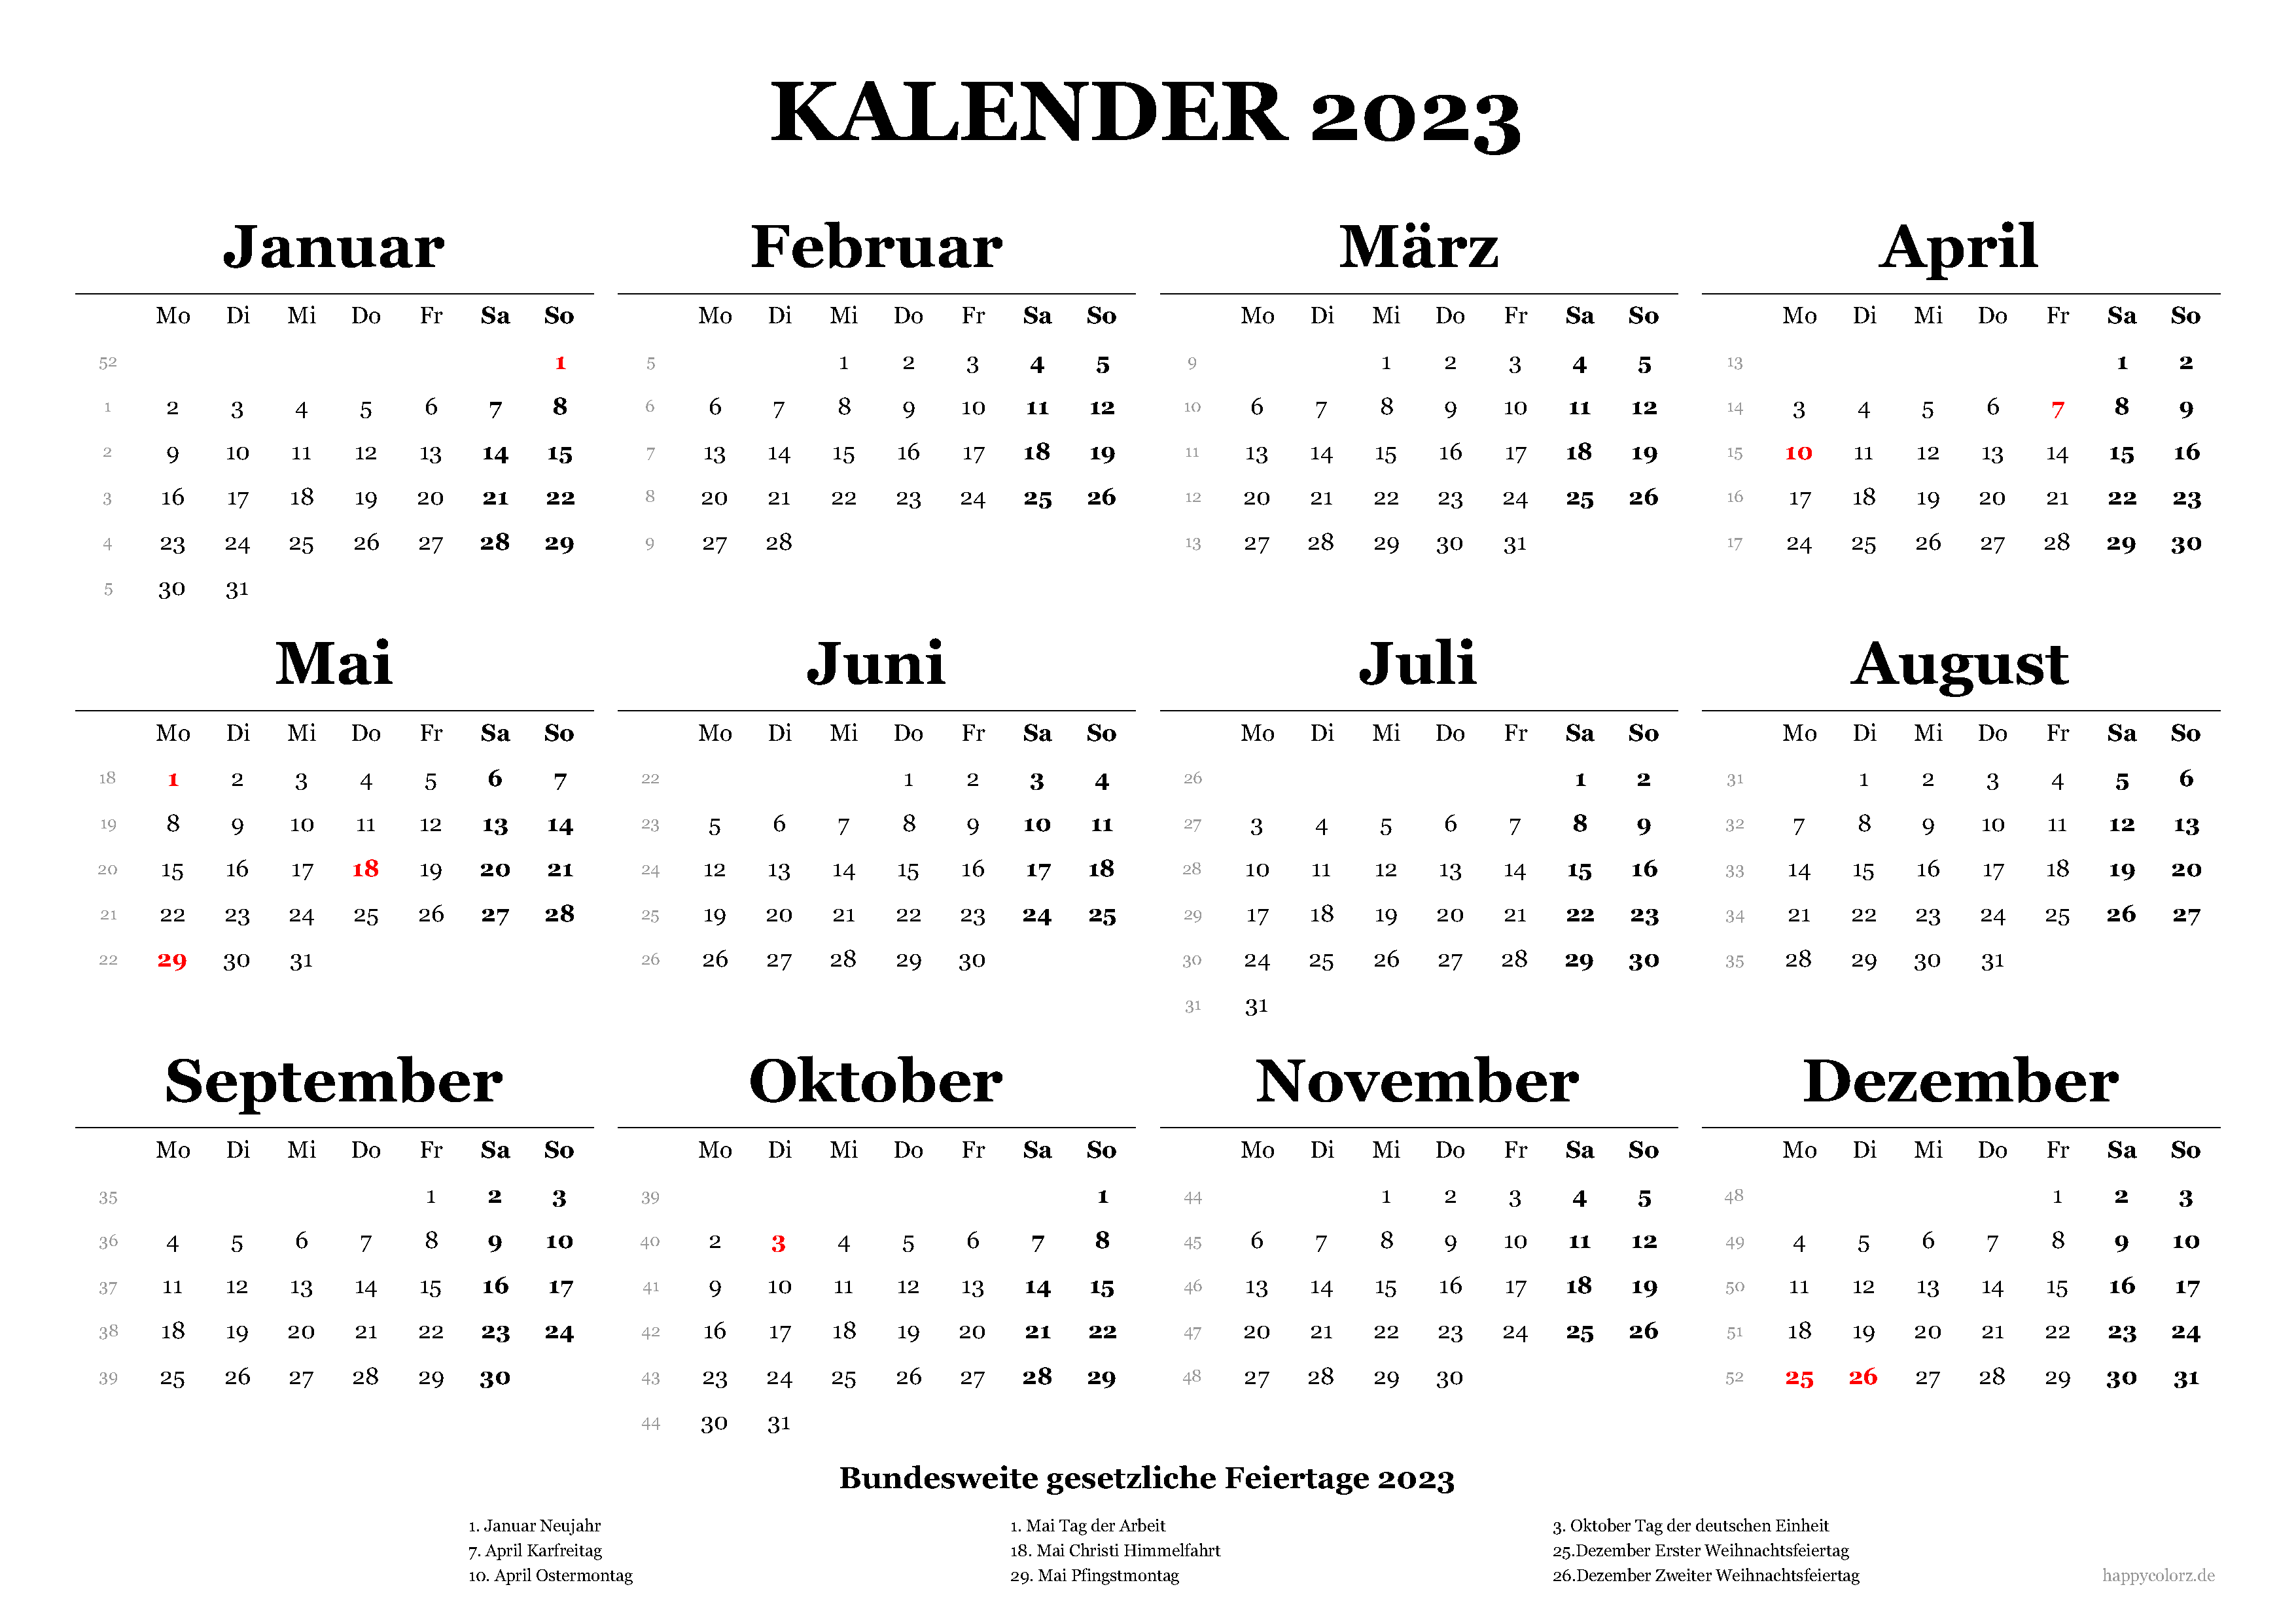 Kalender 2023 klassisch, Querformat PDF zum Ausdrucken